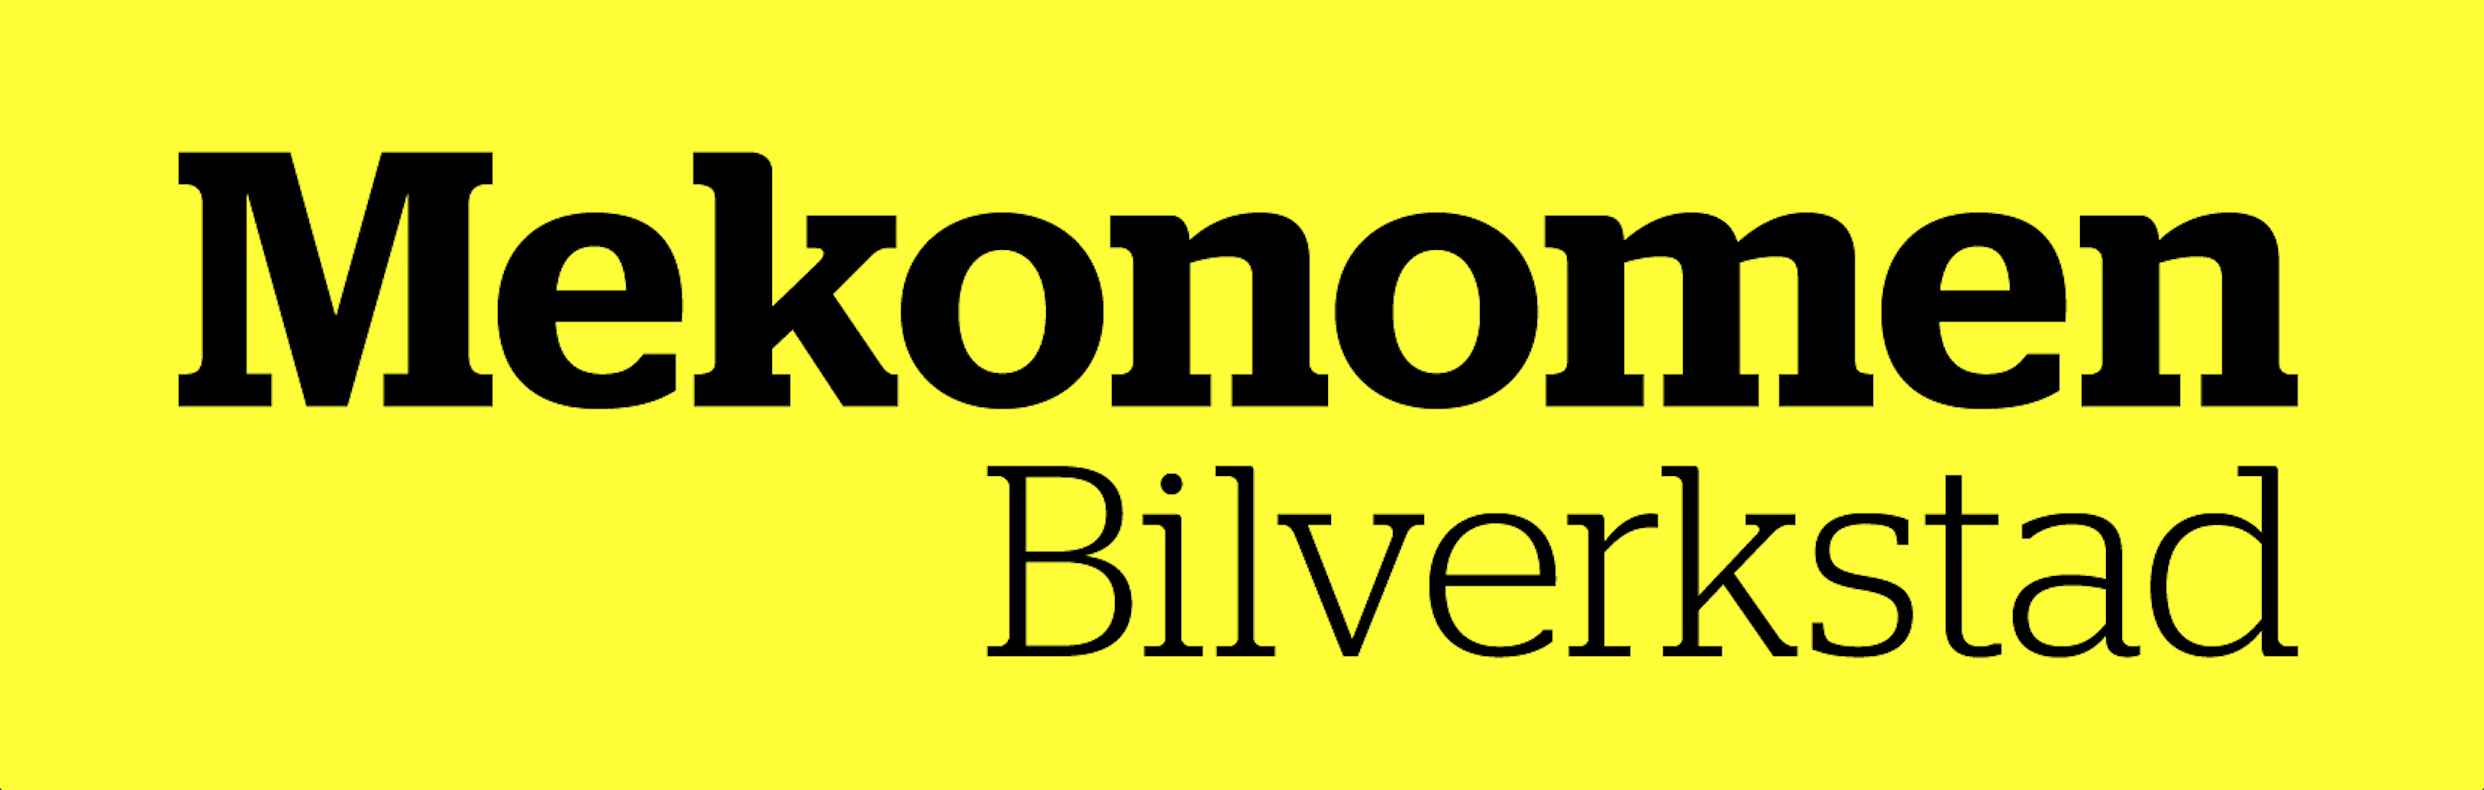 Mekonomen Bilverkstad - Kortedala logo